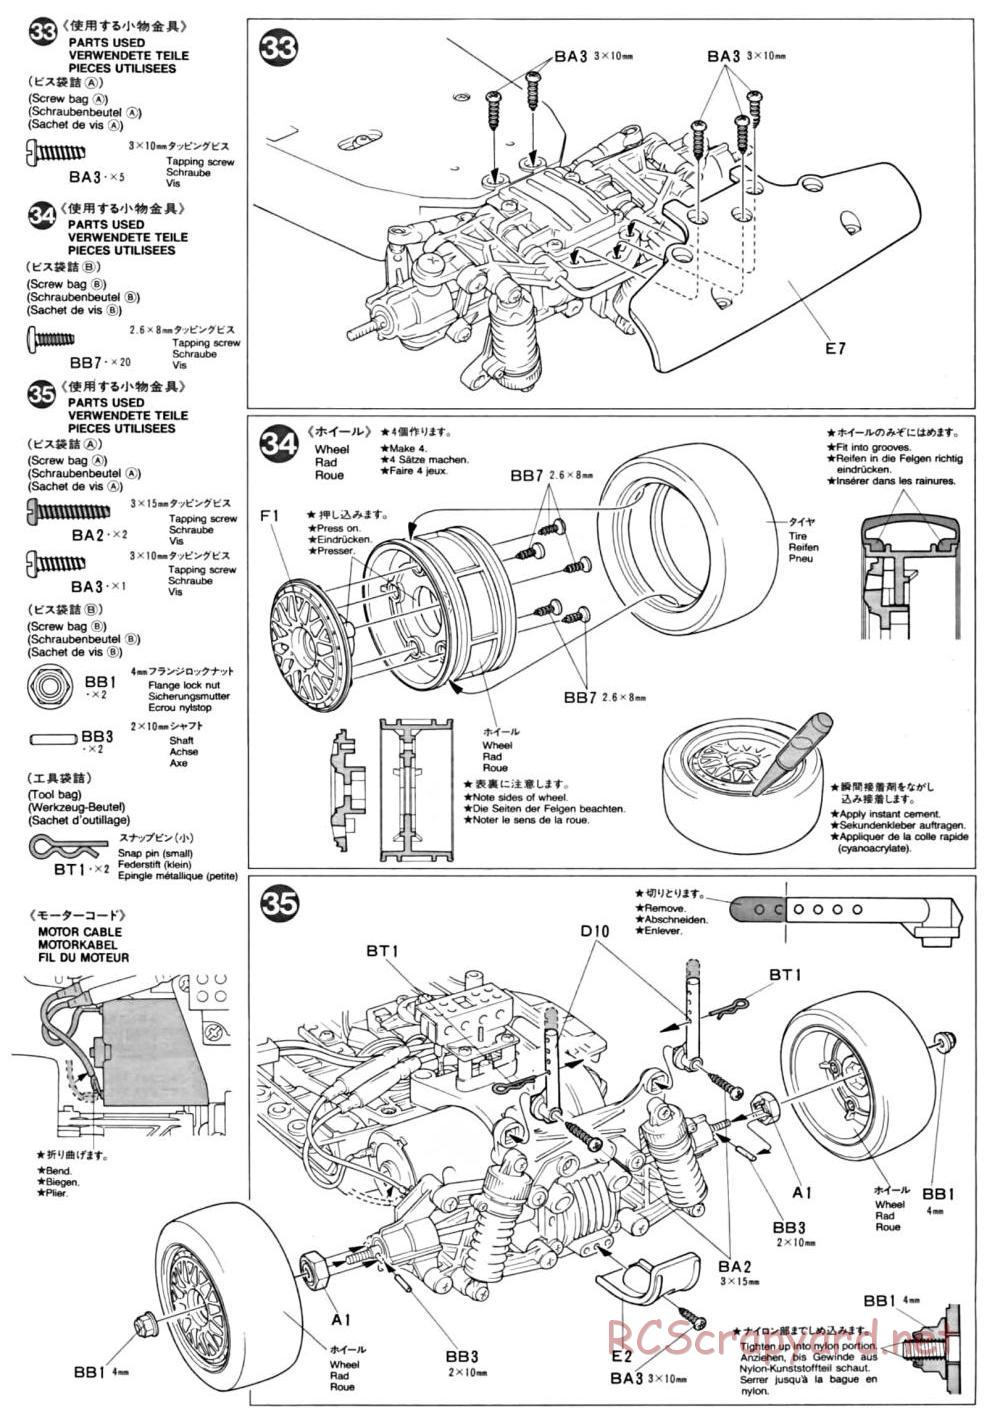 Tamiya - TA-01 Chassis - Manual - Page 13